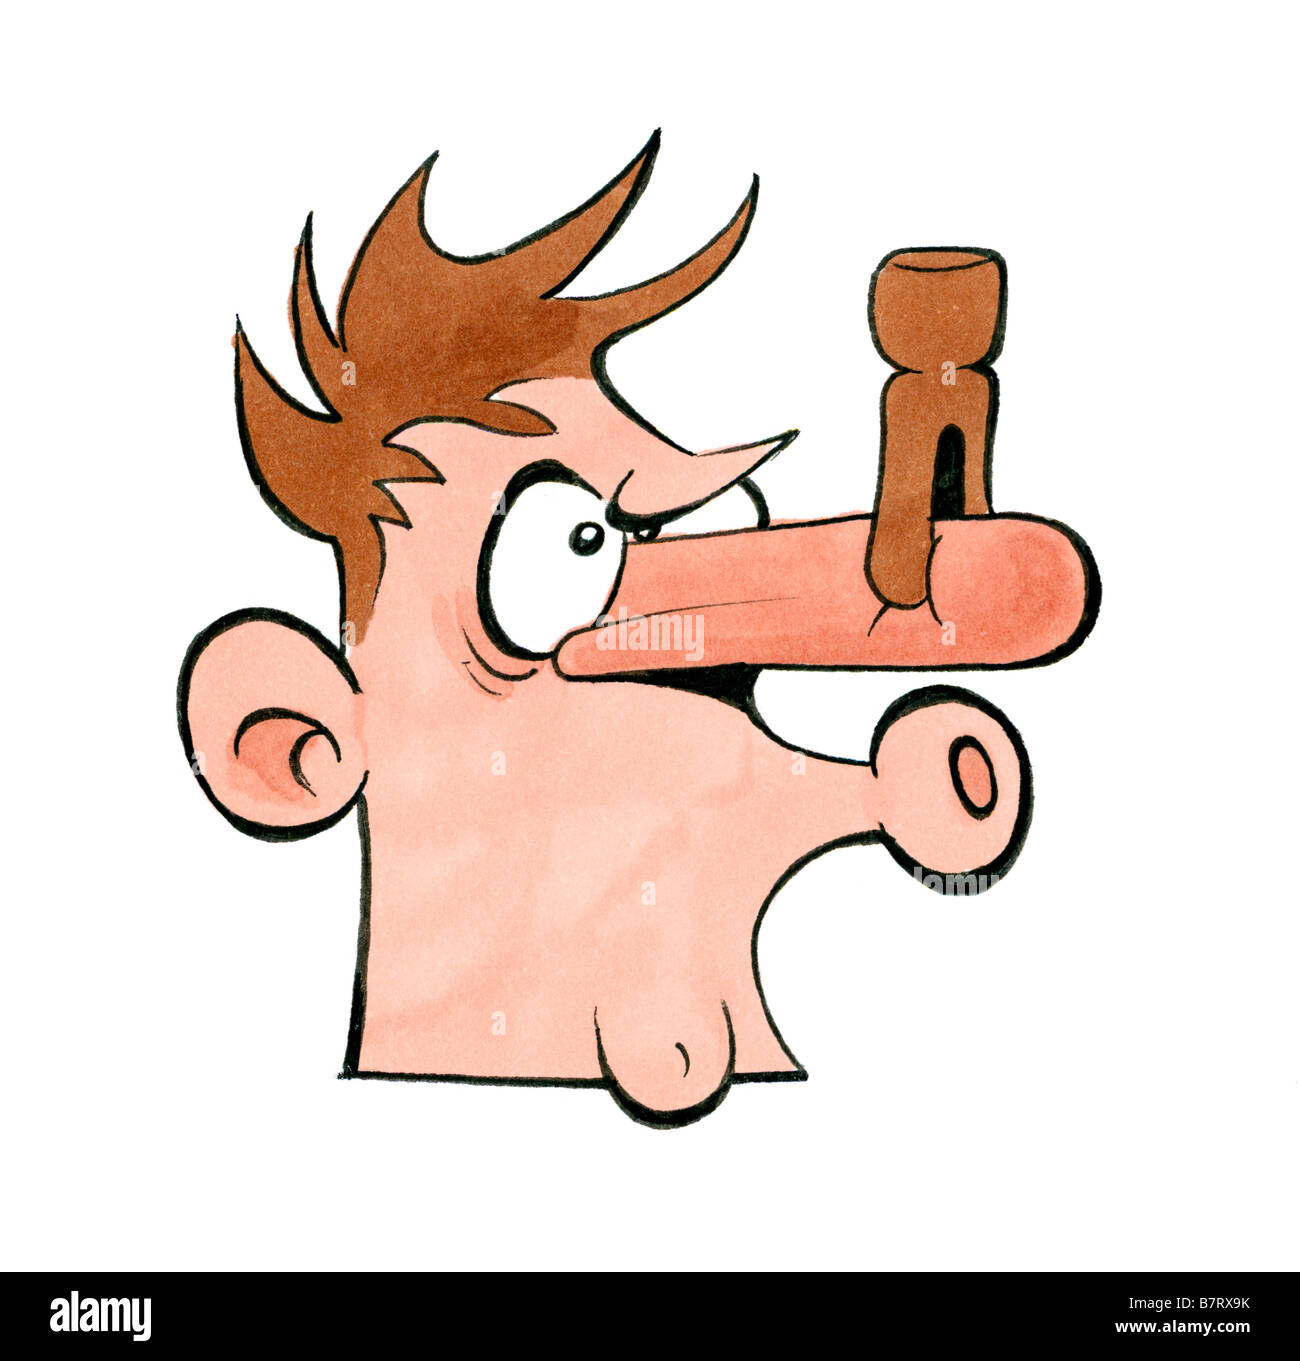 Disegno animato di uomo con peg sul suo naso per fermare l'odore Foto Stock